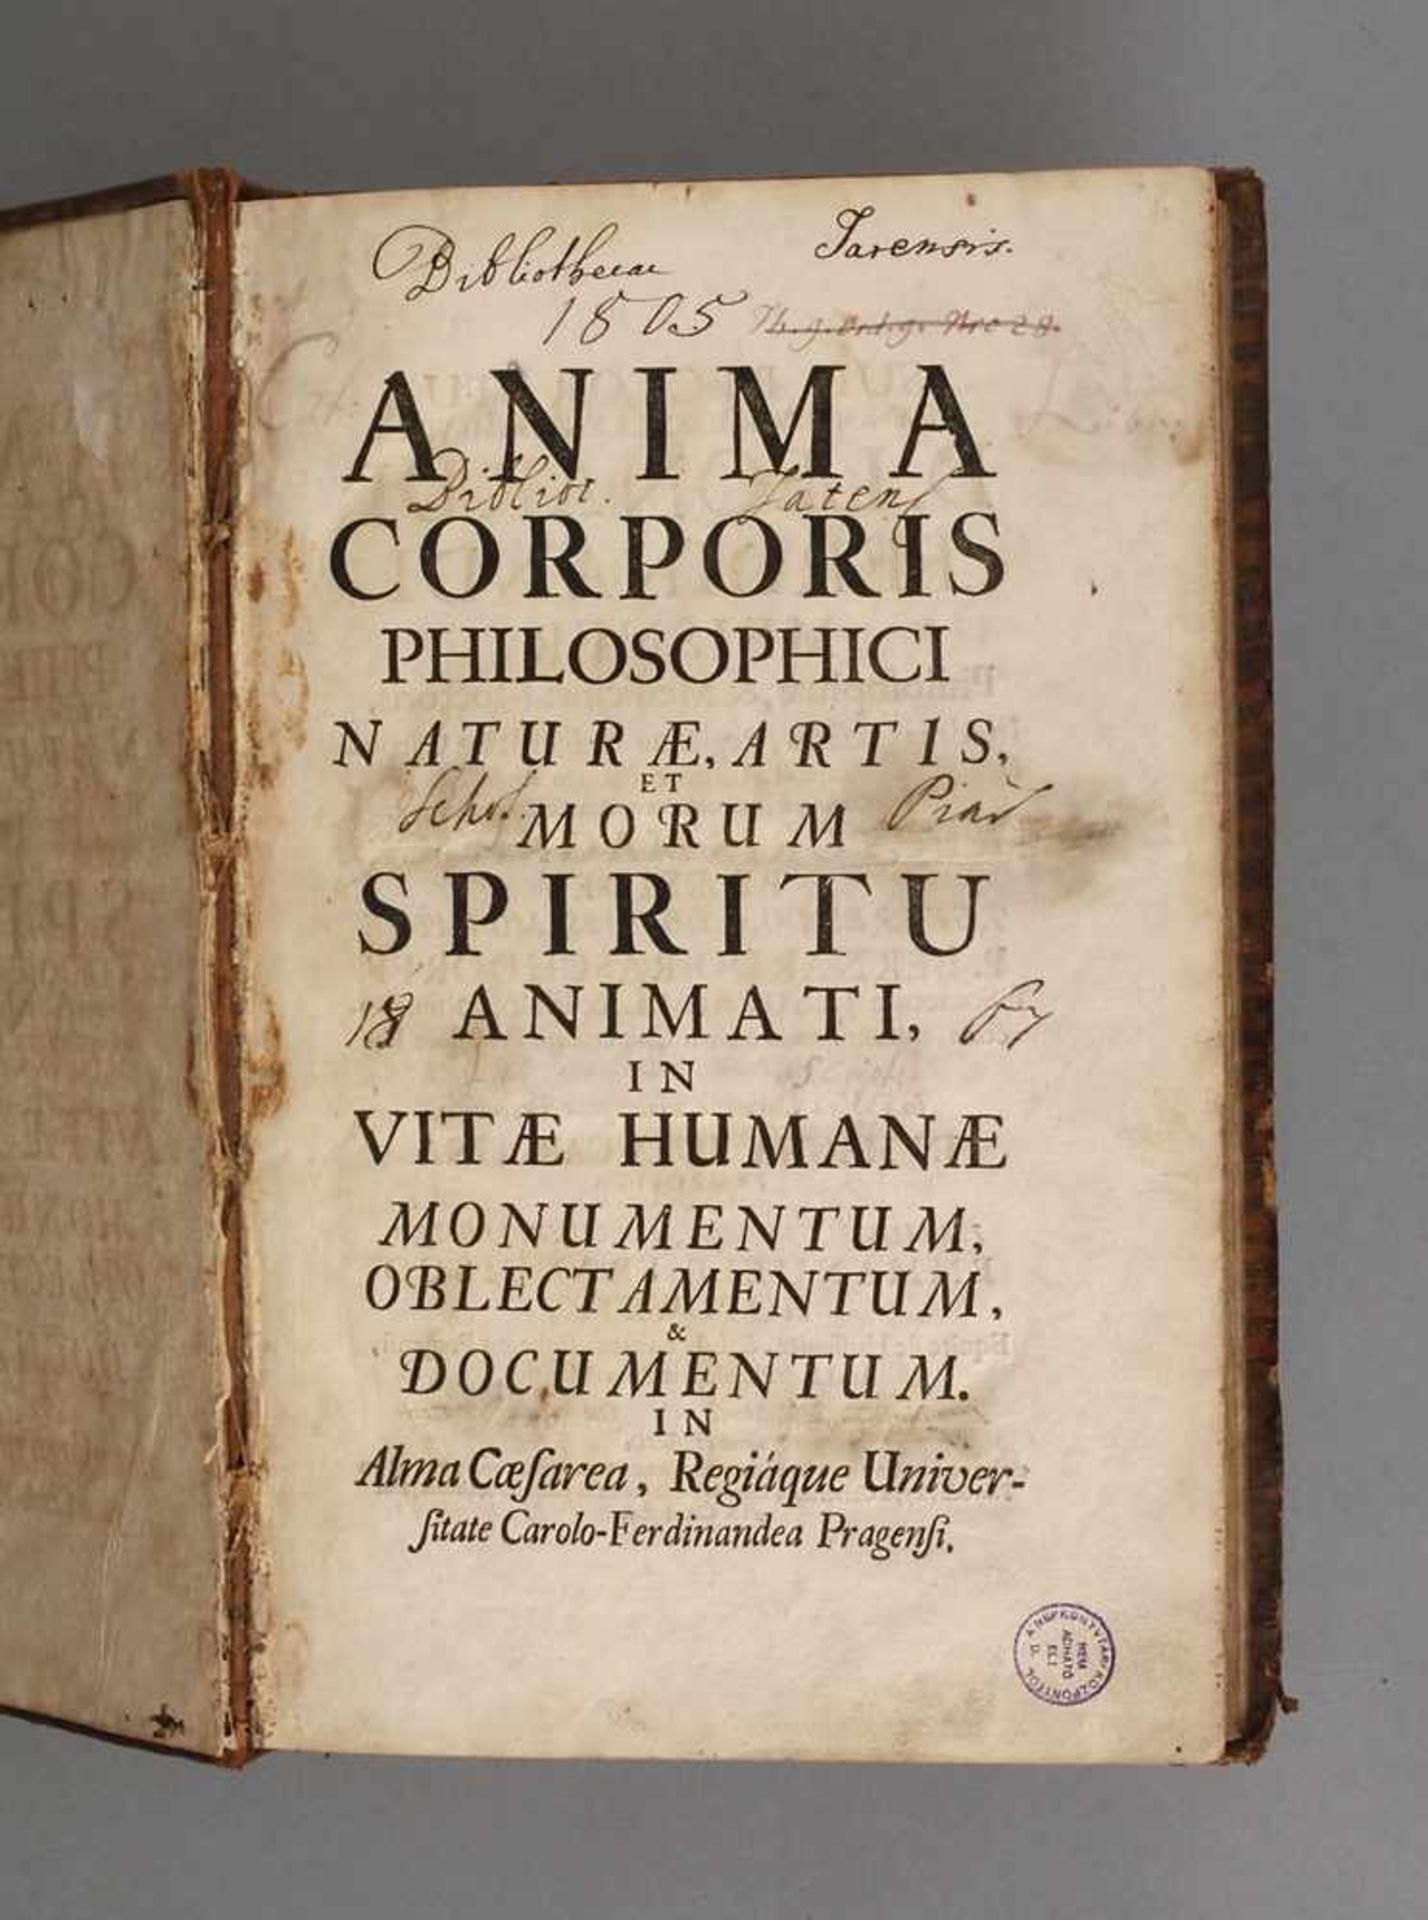 Anima Corporis Philosophici Naturaeartis et morum spiritu animati in vitae humanae monumentum,